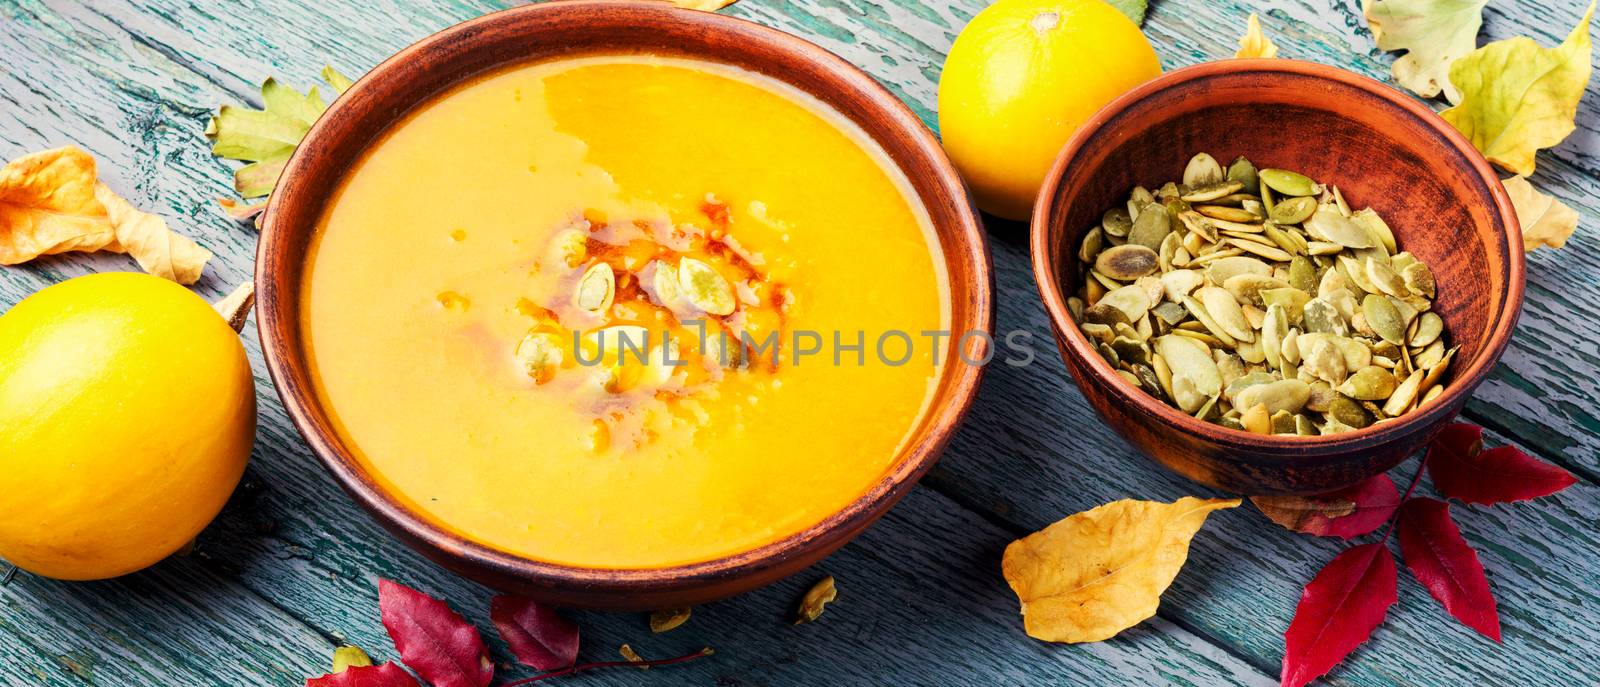 Dietary vegetarian pupmkin cream soup.Autumnal pumpkin soup